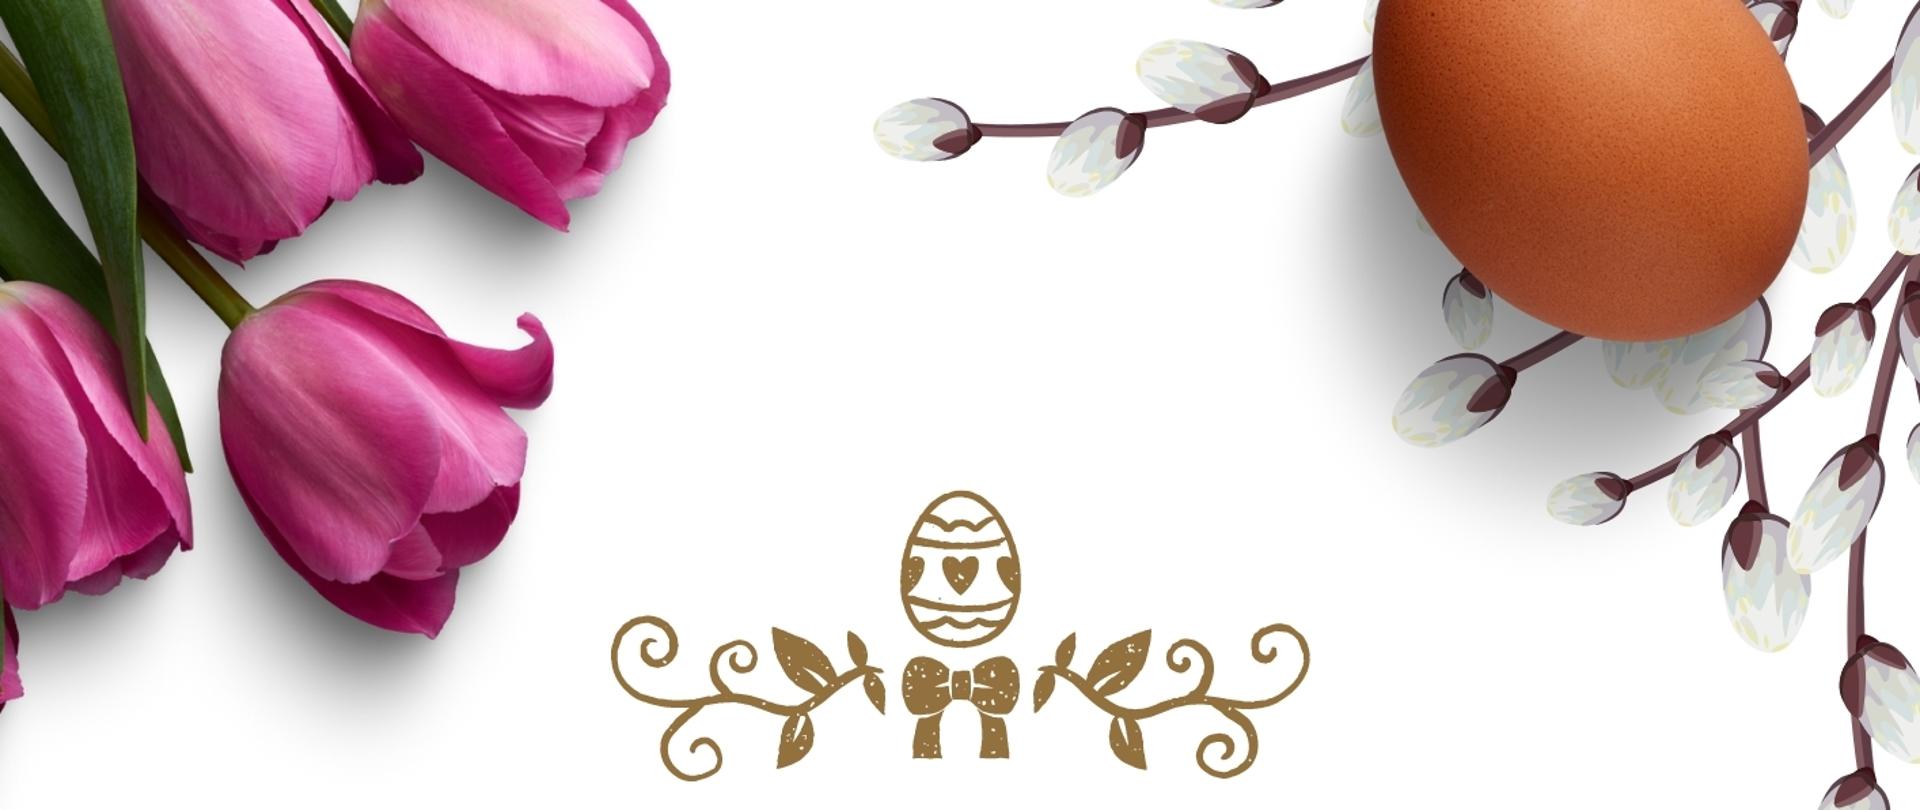 na białym tle plakatu od góry i od dołu kwiaty oraz jajka wielkanocne, po środku życzenia wielkanocne od dyrektora szkoły